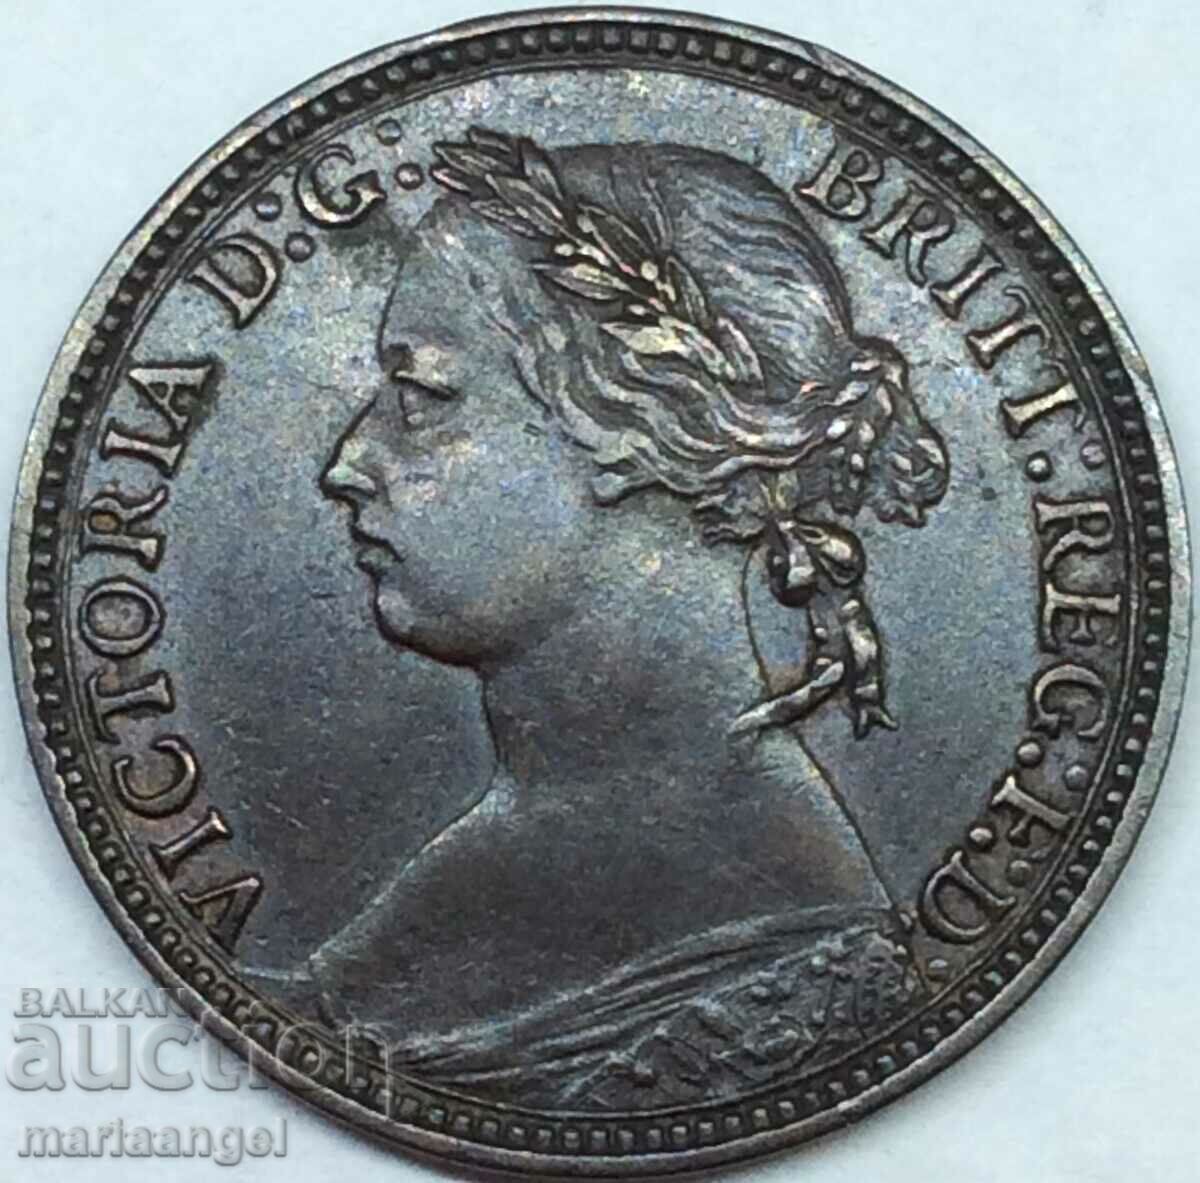 Great Britain 1/2 Penny 1875 Victoria Bronze